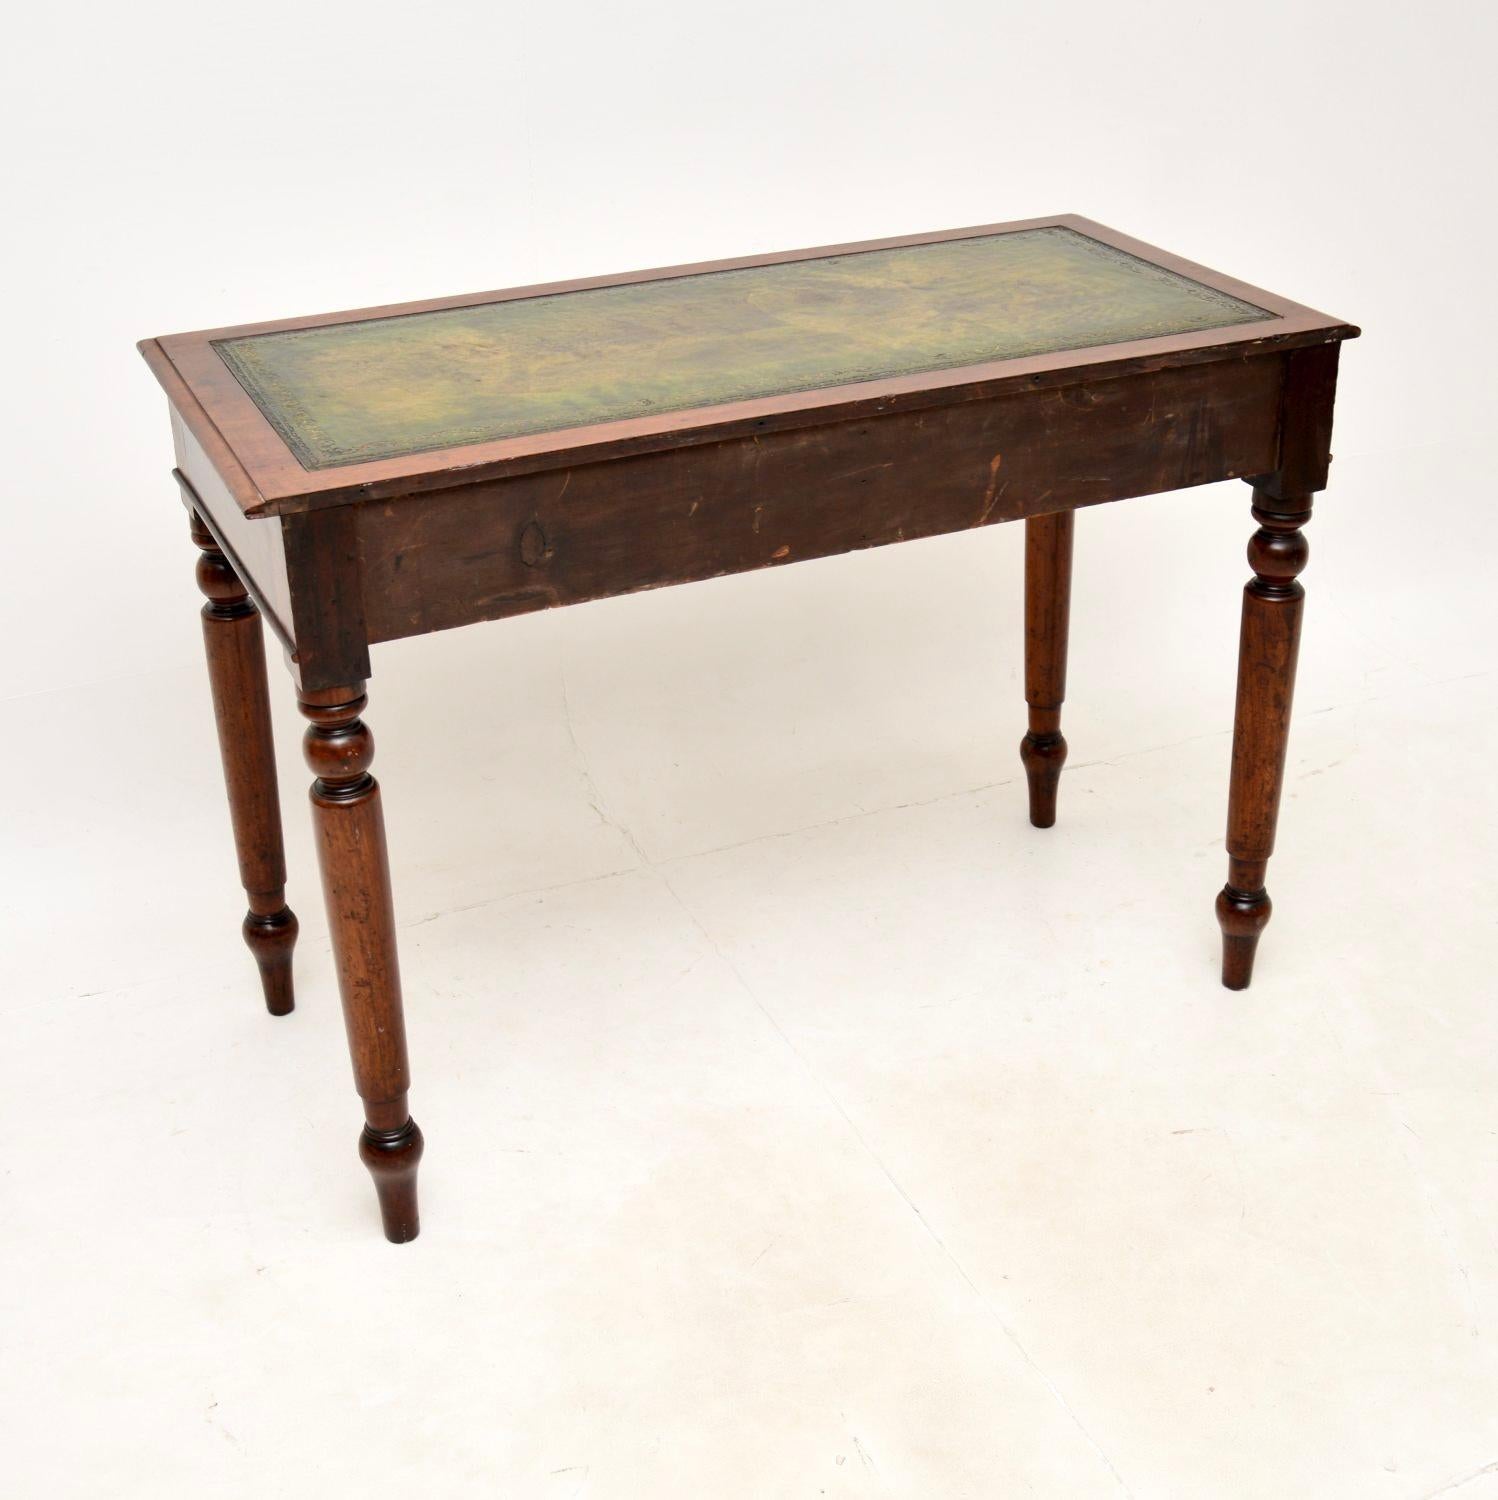 Une table à écrire/un bureau victorien ancien, élégant et très utile. Fabriqué en Angleterre, il date de la période 1860-1880.

Il est très bien fait et d'une taille très utile, pas trop profond d'avant en arrière. La surface d'écriture en cuir est